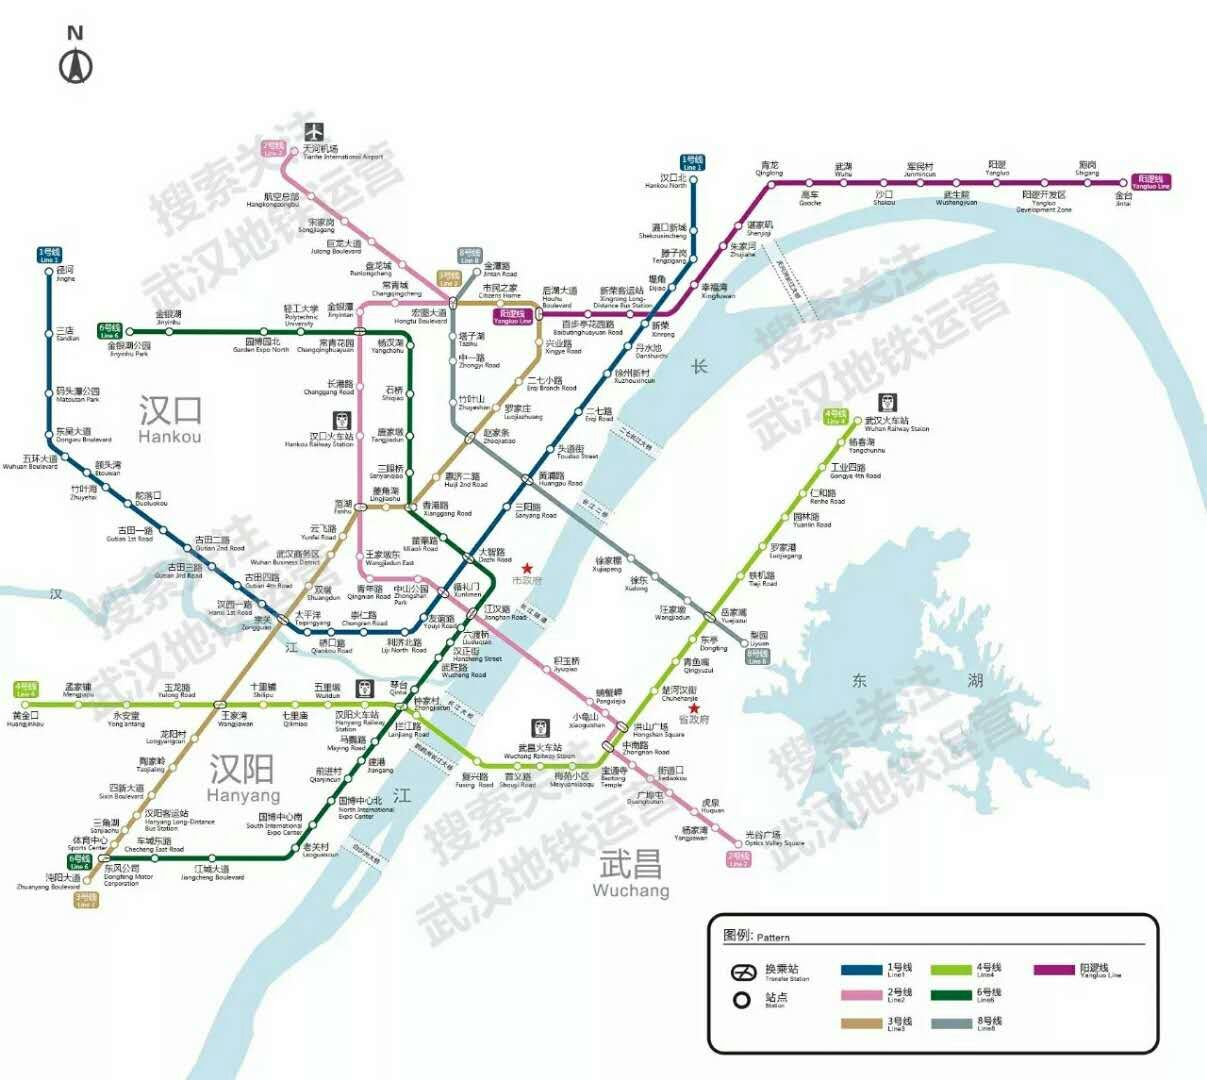 三条新线开通后武汉轨道交通运营里程达237km.